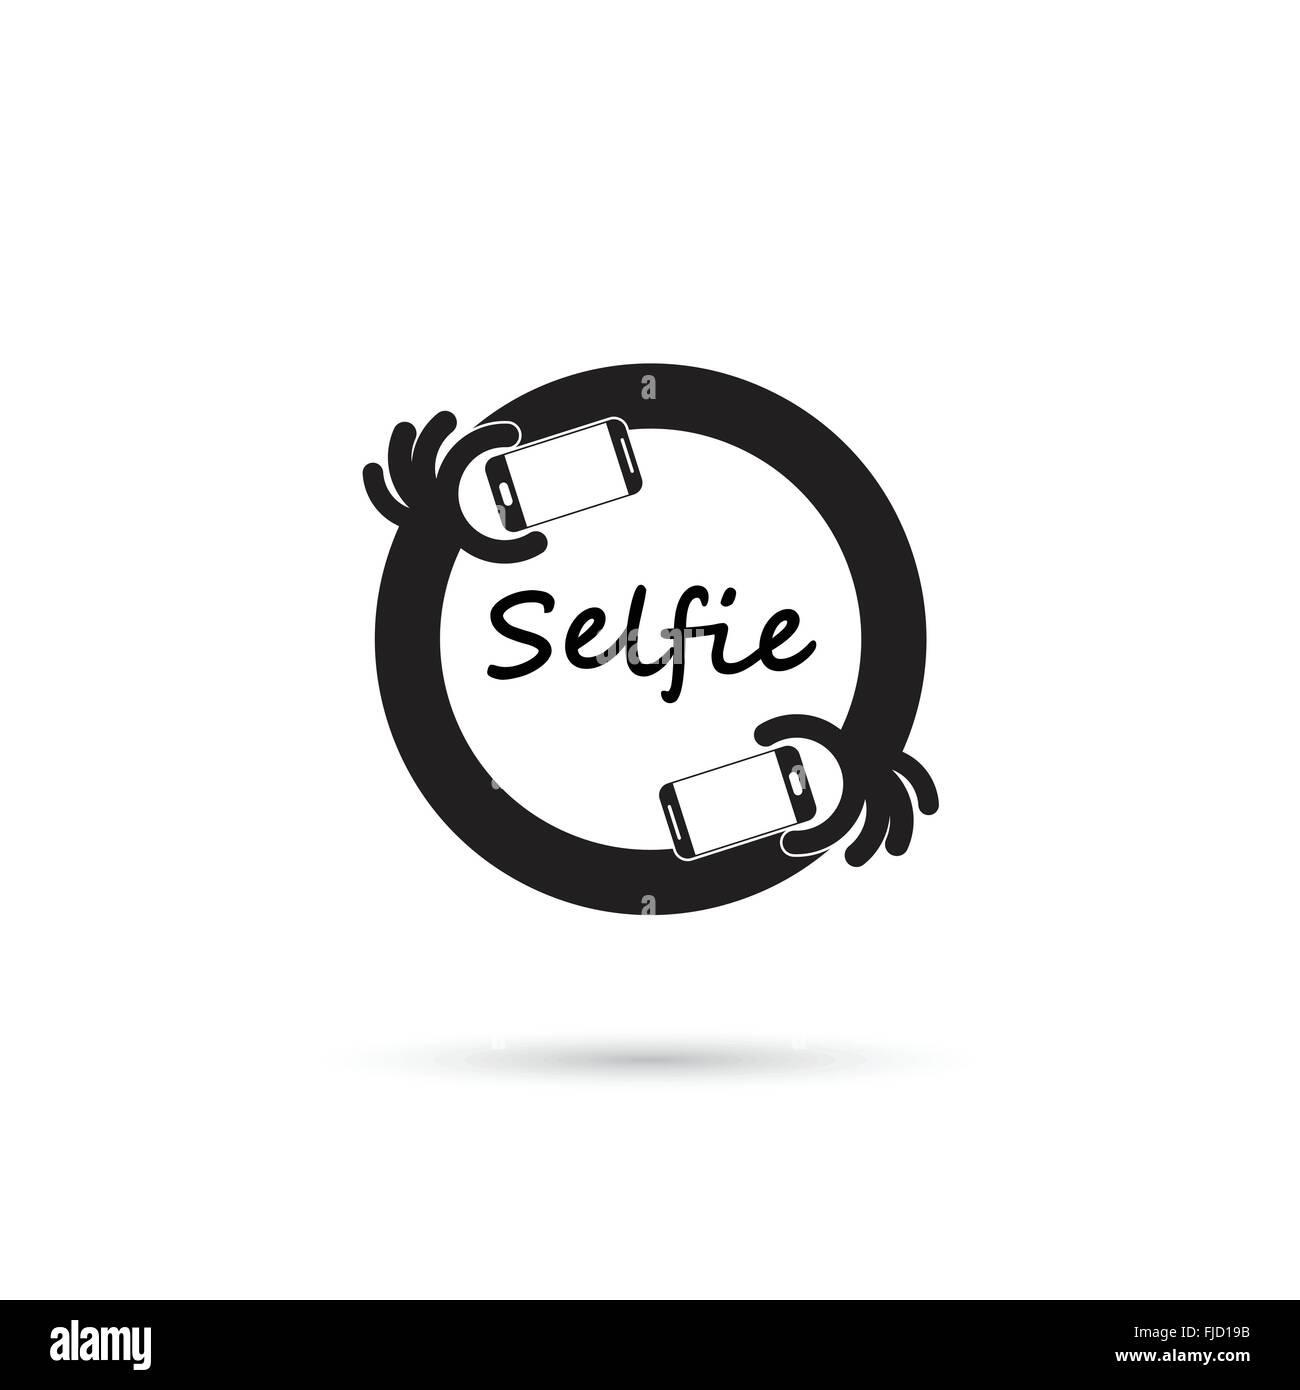 Einnahme von Selfie Porträtfoto auf Smartphone-Konzept-Symbol. Selfie-Konzept-Design-Element. Vektor-illustration Stock Vektor